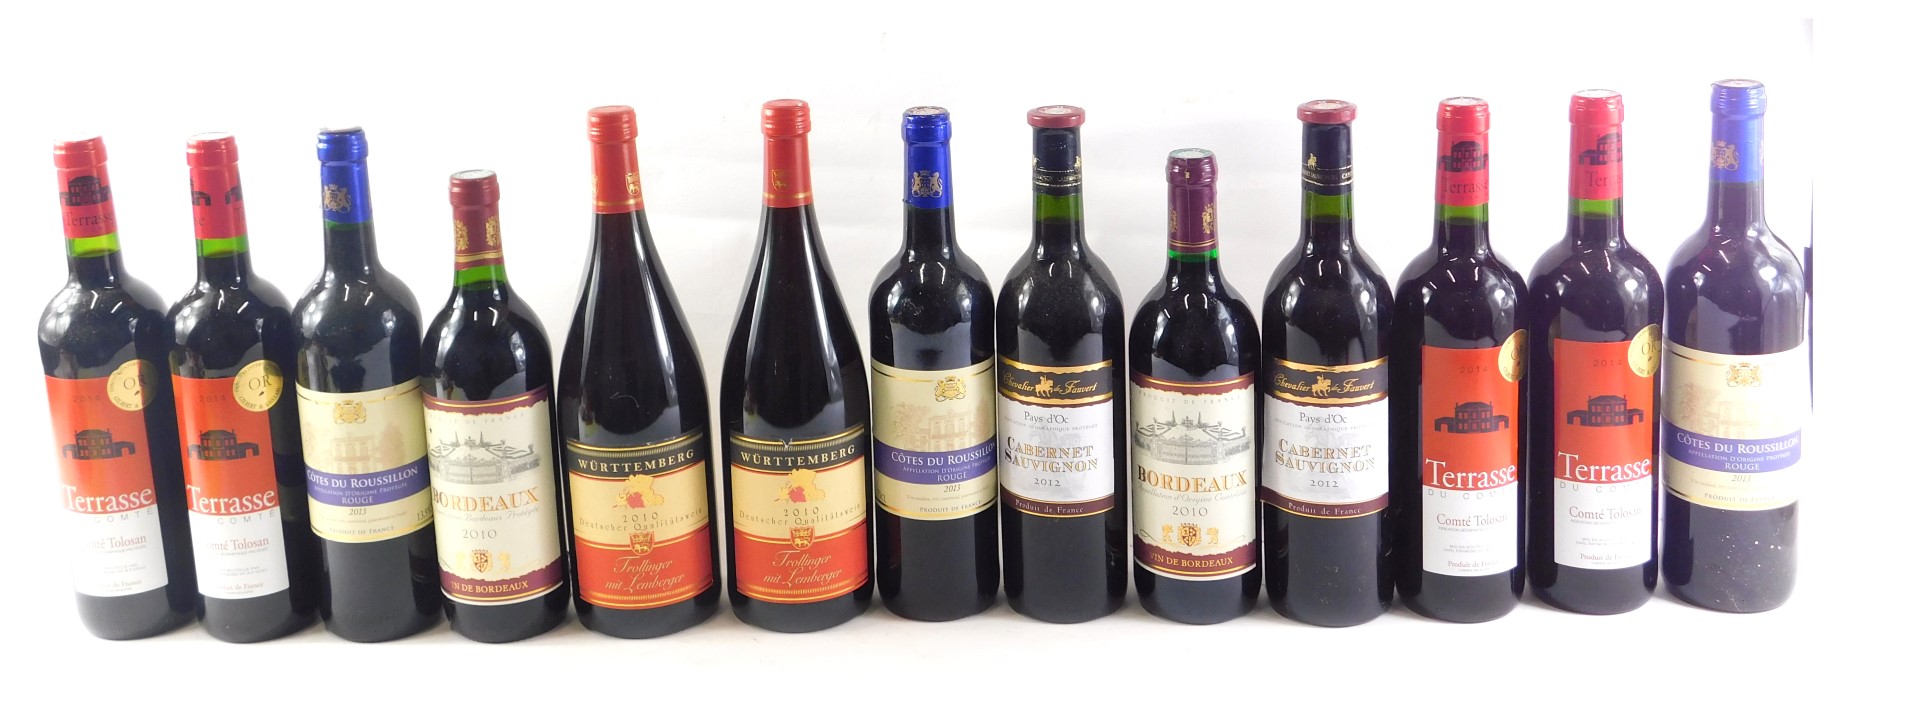 A quantity of red wine, to include Bordeaux, Terrasse Du Comte, Cote du Roussillon, etc.